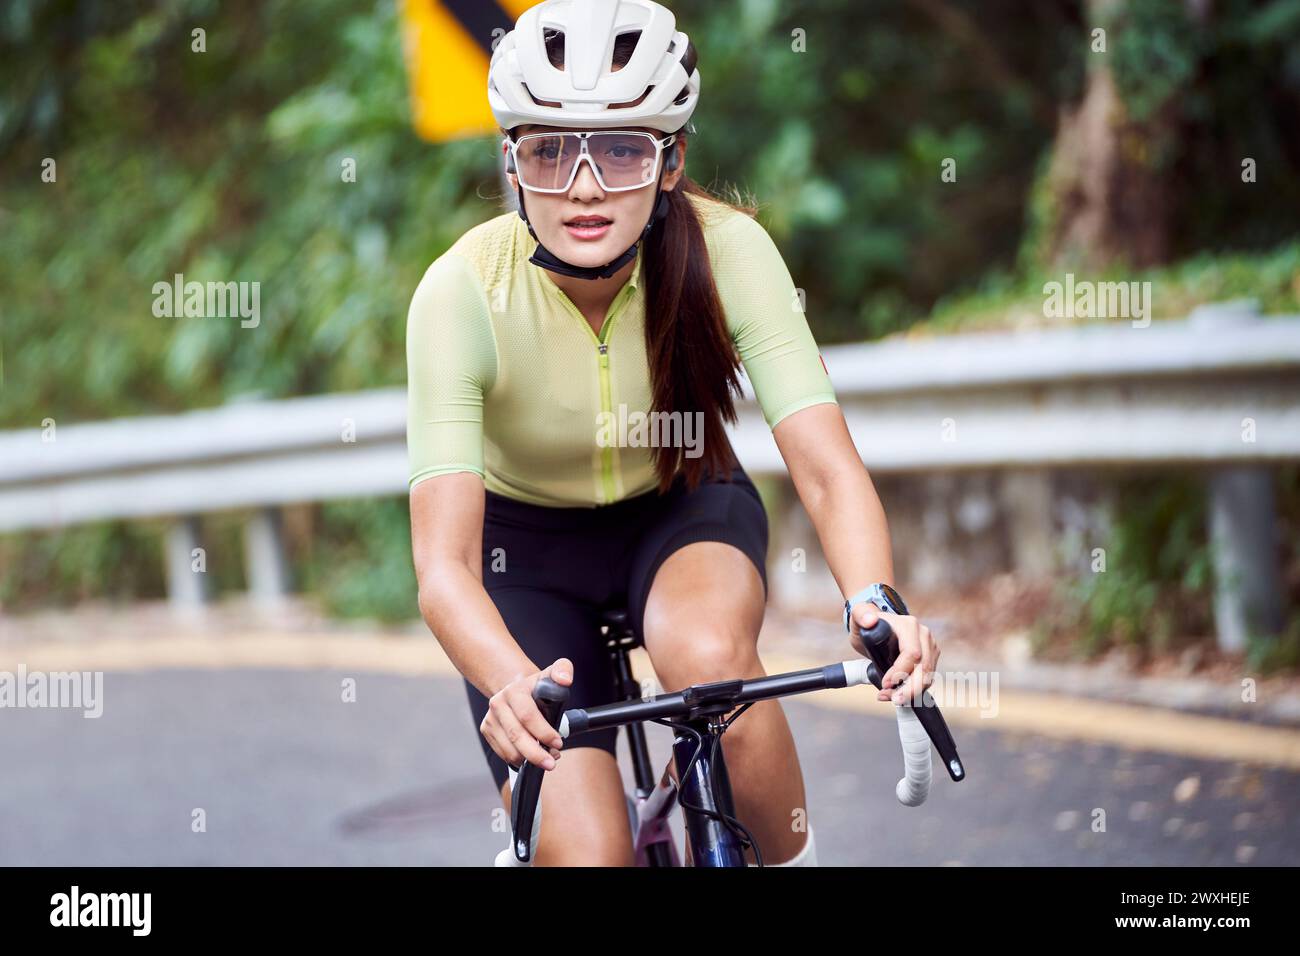 jeune femme asiatique cycliste femme chevauchant le vélo à l'extérieur sur la route rurale Banque D'Images